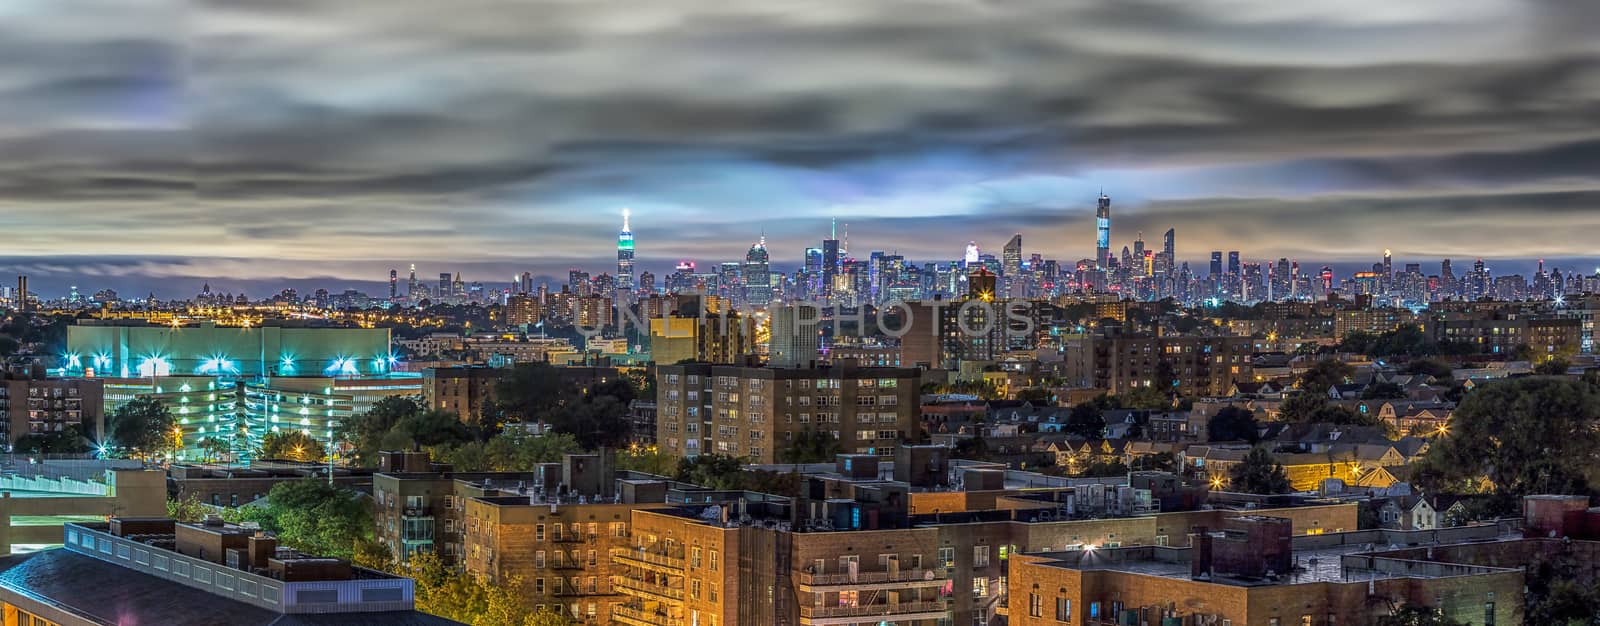 Manhattan skyline at night by derejeb